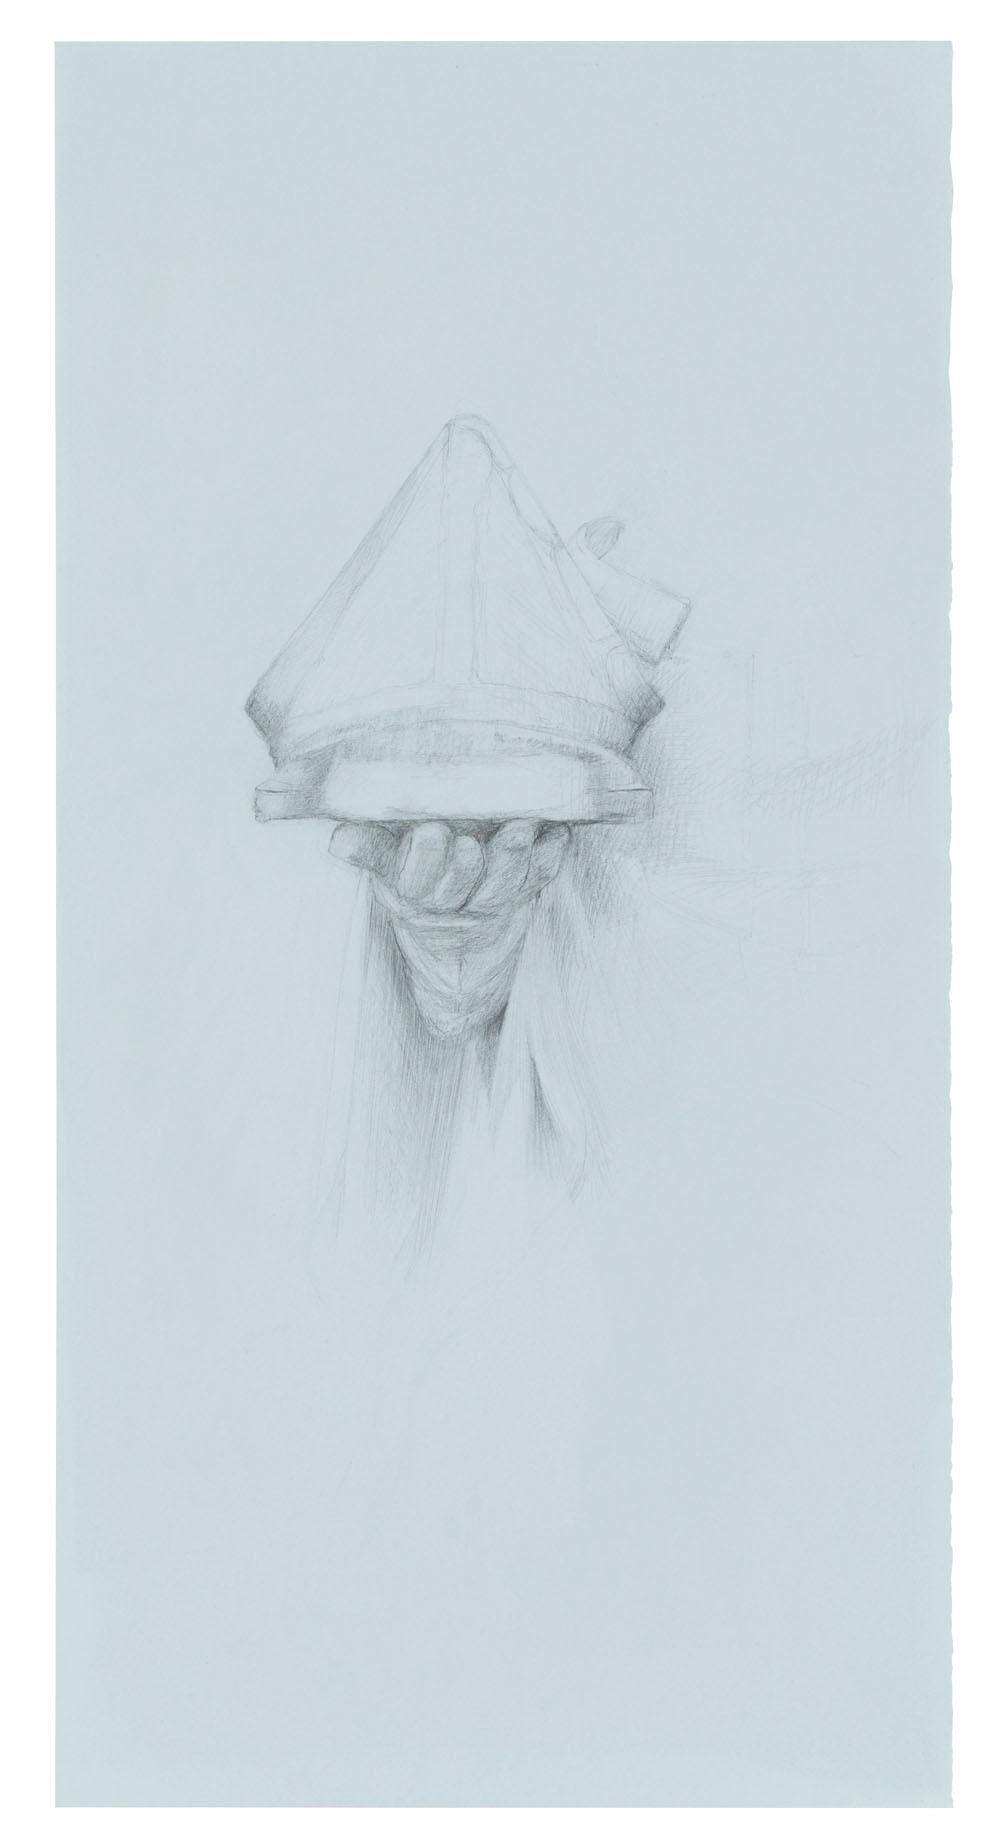 Die Einholung, 2017. pencil on paper. 50 x 25.3 cm